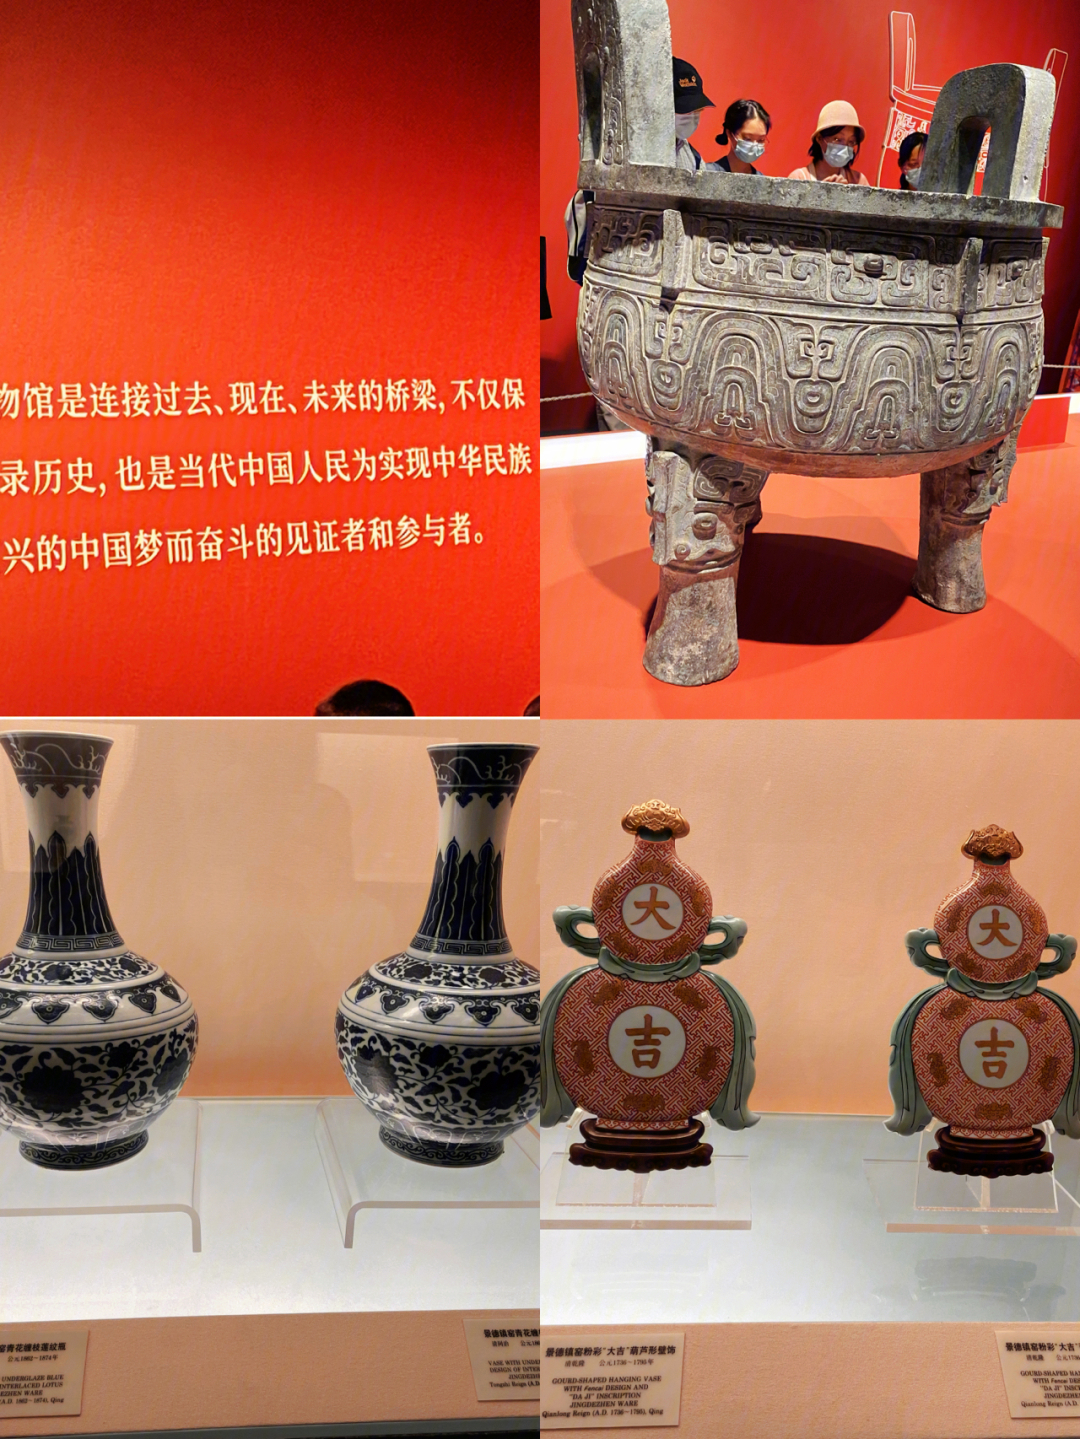 上海博物馆青铜馆小报图片